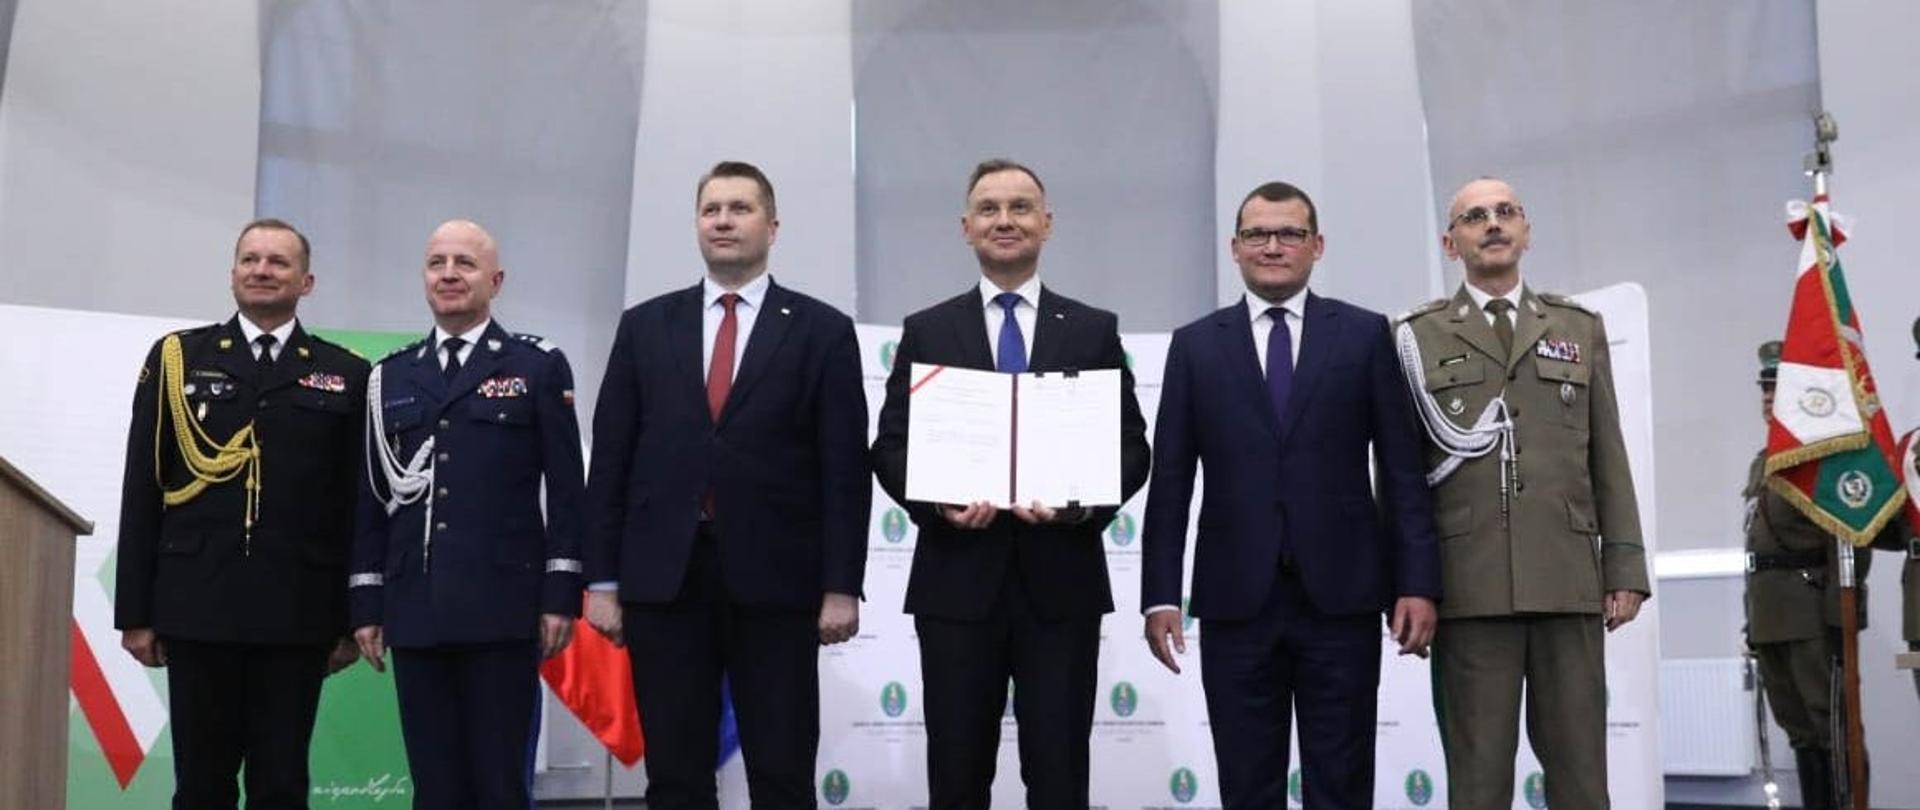 Sześciu mężczyzn stoi na środku sceny. Dwóch w granatowych mundurach, trzech w garniturach i jeden w zielonym mundurze. W środku mężczyzna w garniturze trzyma podpisany dokument.